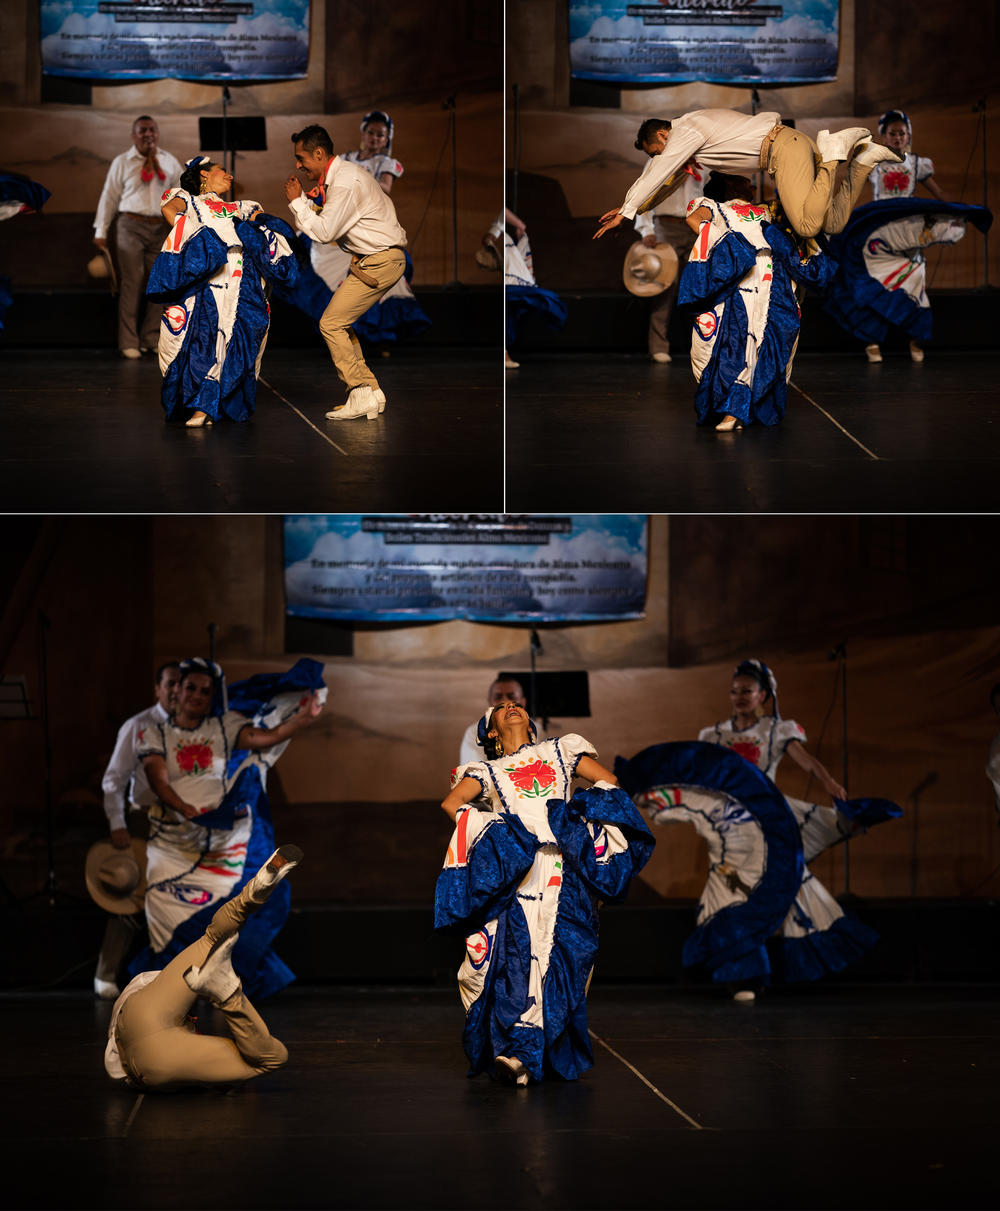 Miembros del grupo de Danzas y Bailes tradicionales Alma Mexicana interpretan un baile regional de Sinaloa, México, en el Teatro Ferrocarrilero Gudelio Morales de Ciudad de México en julio.